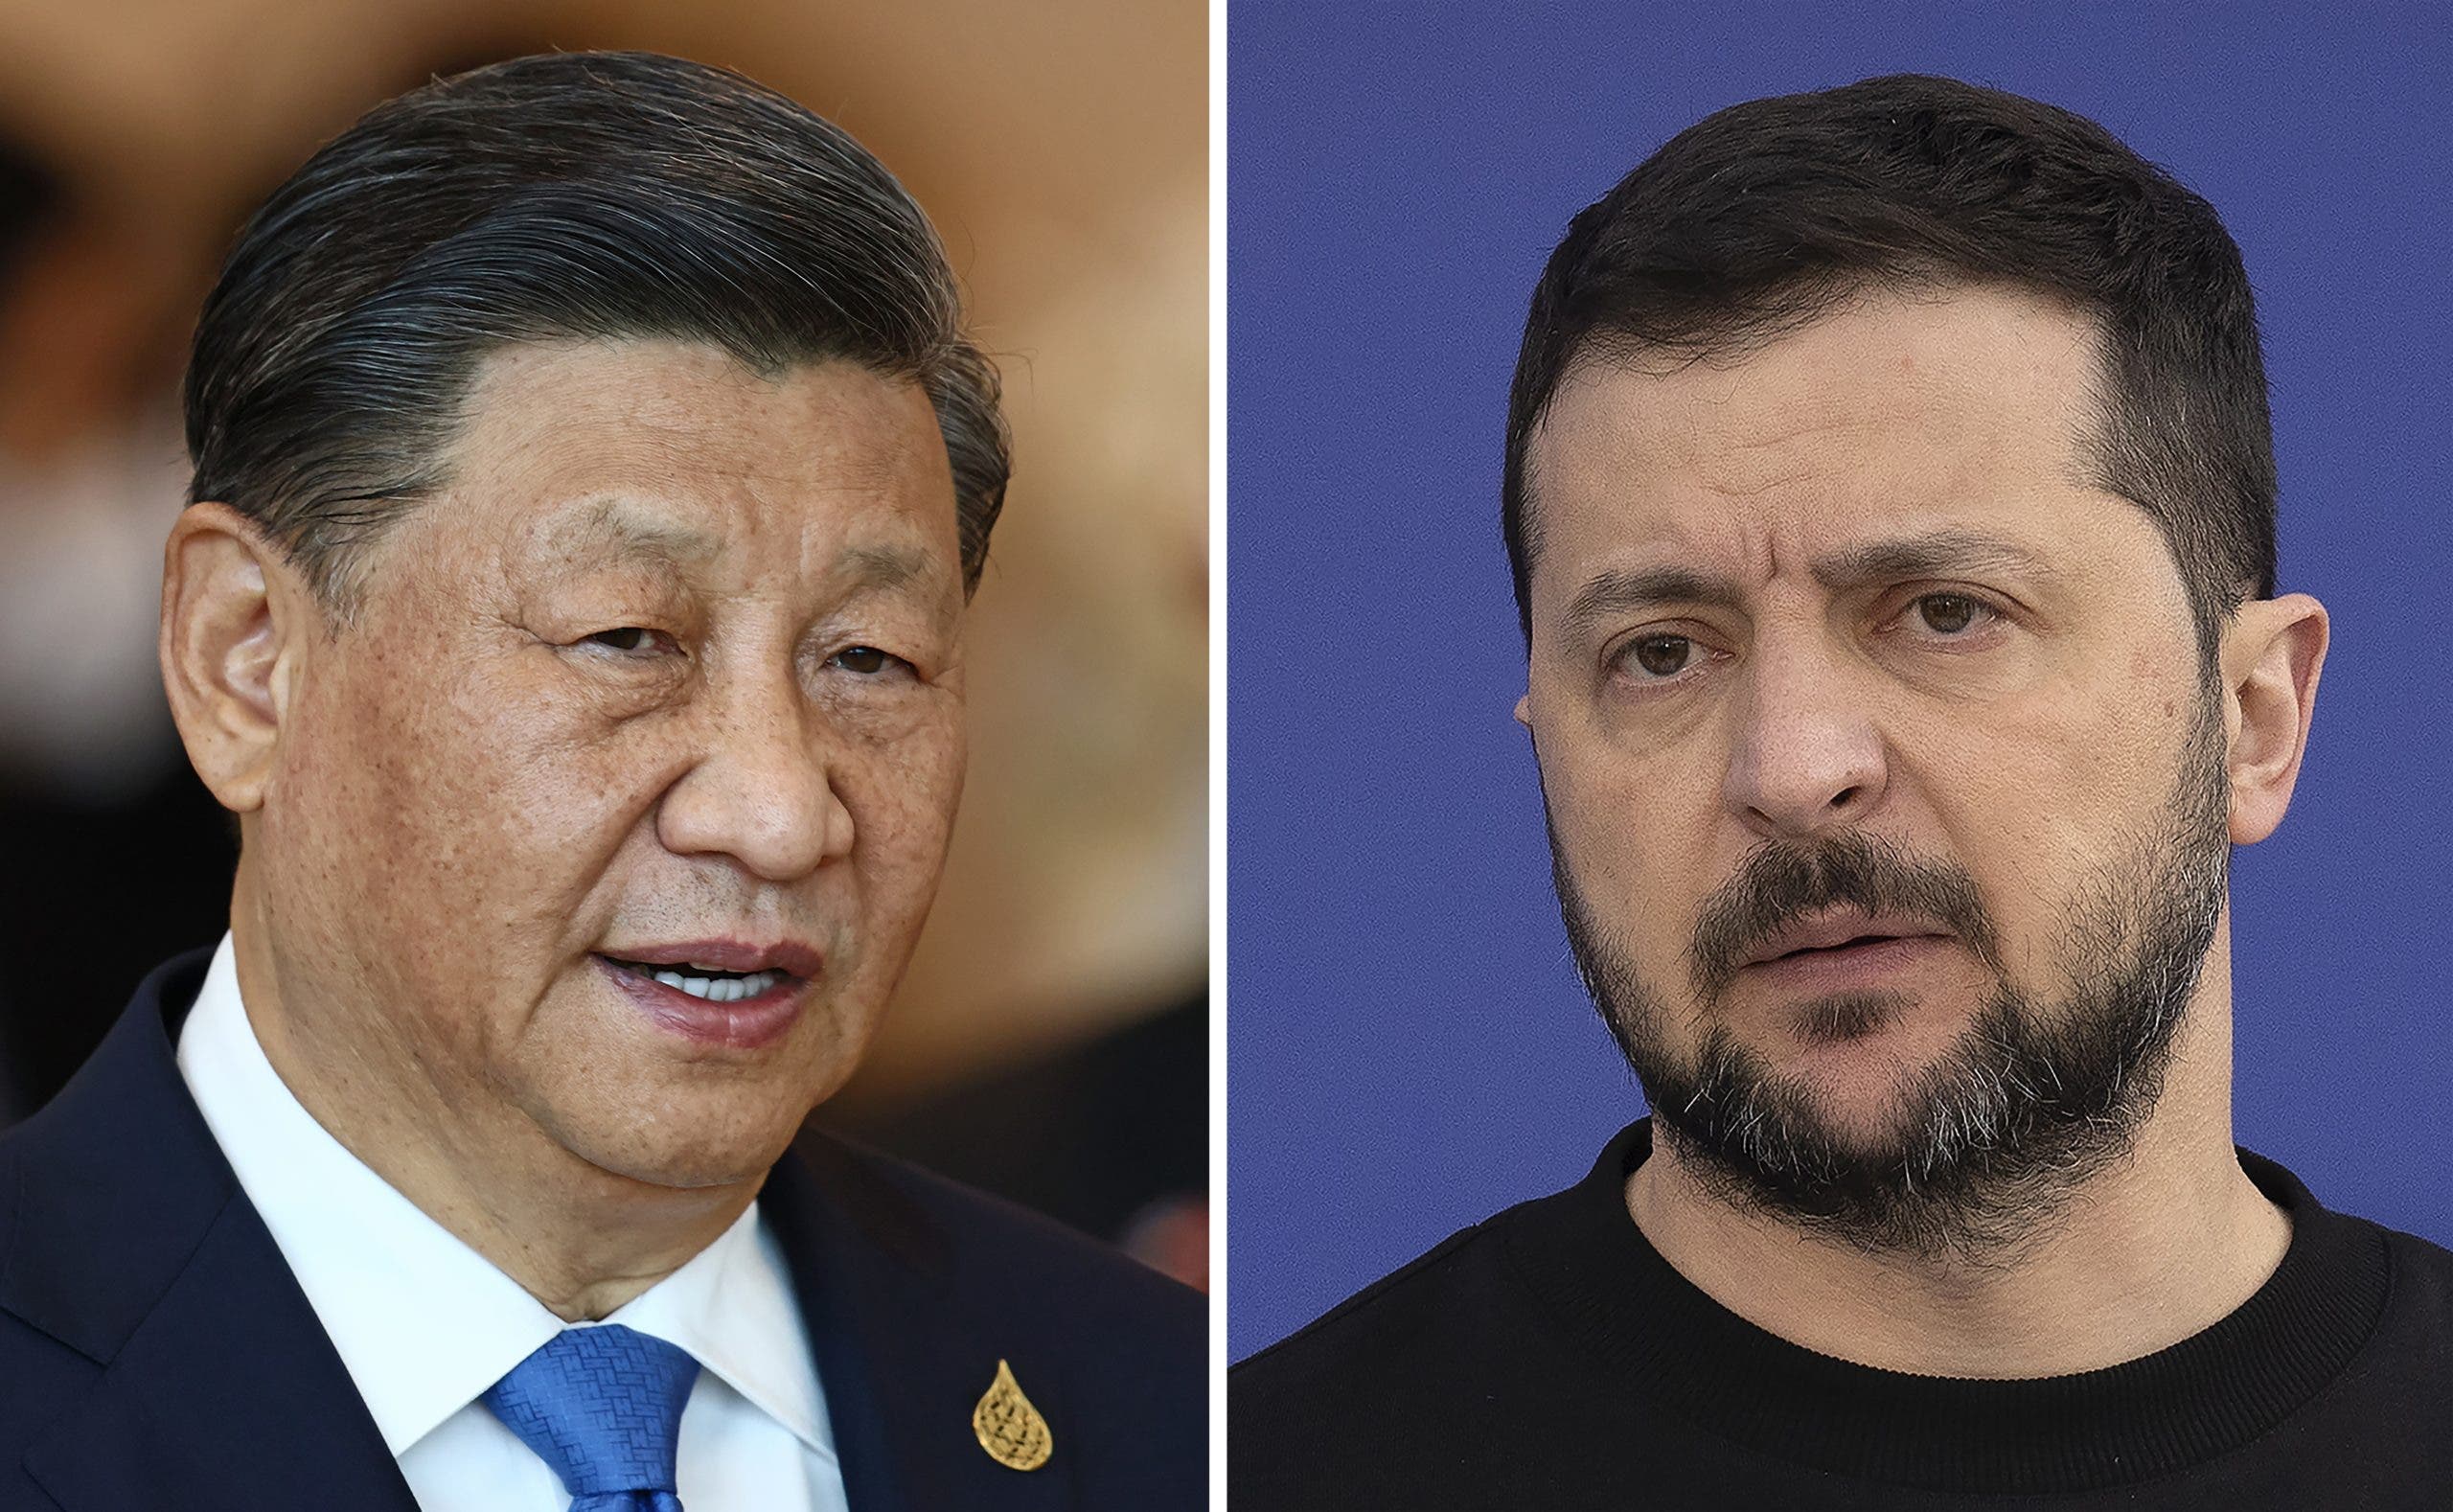 Ucrania dice que llamada entre Zelenski y Xi “abre una nueva etapa” con China